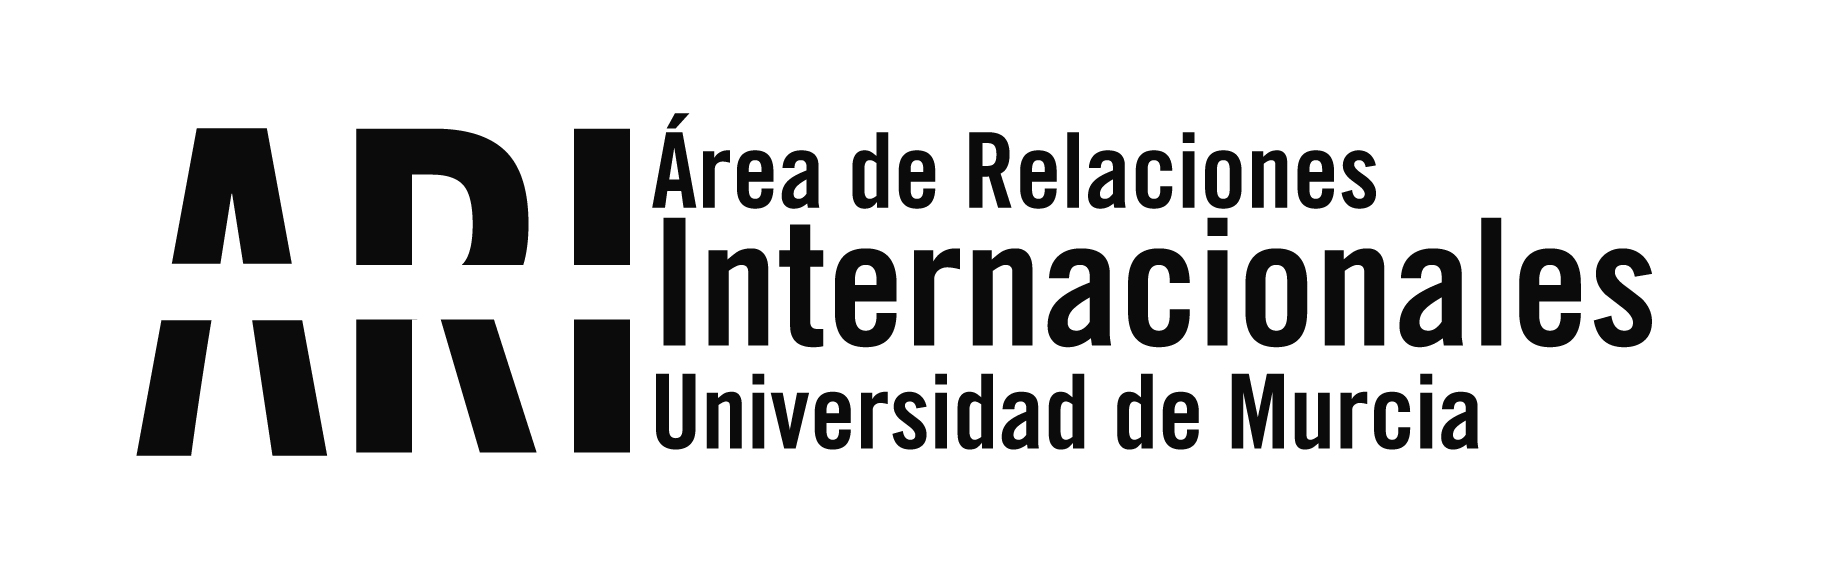 Participación en el programa Murcia Más Cerca de ROM Murcia Radio - Área de Relaciones Internacionales